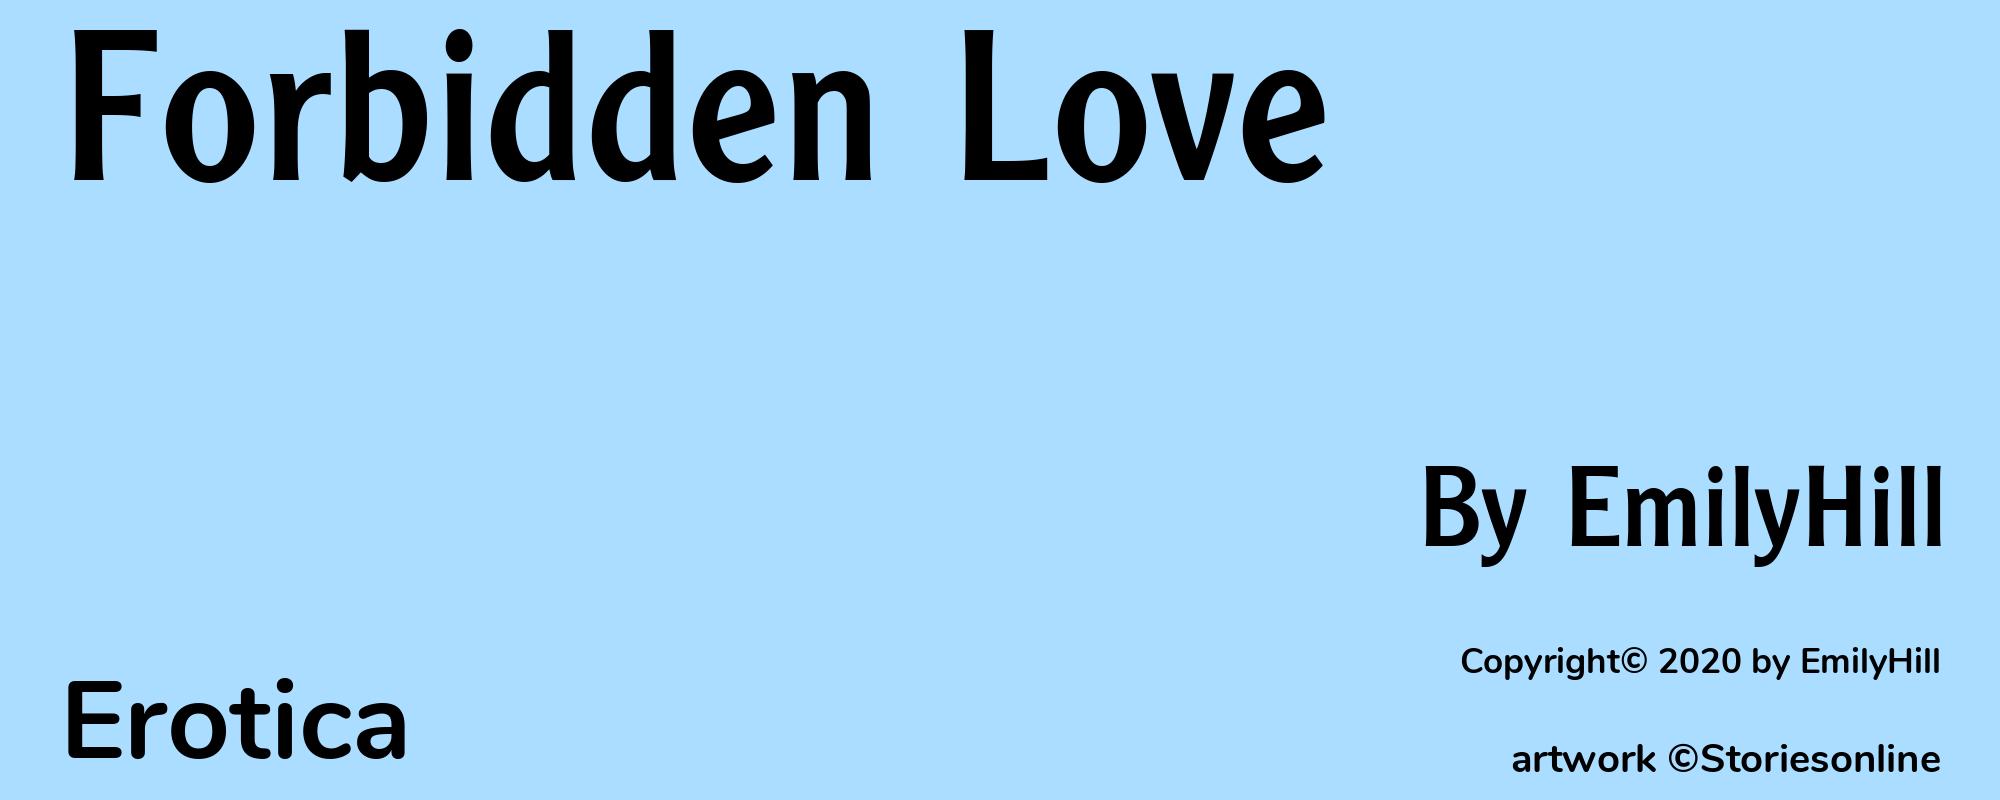 Forbidden Love - Cover